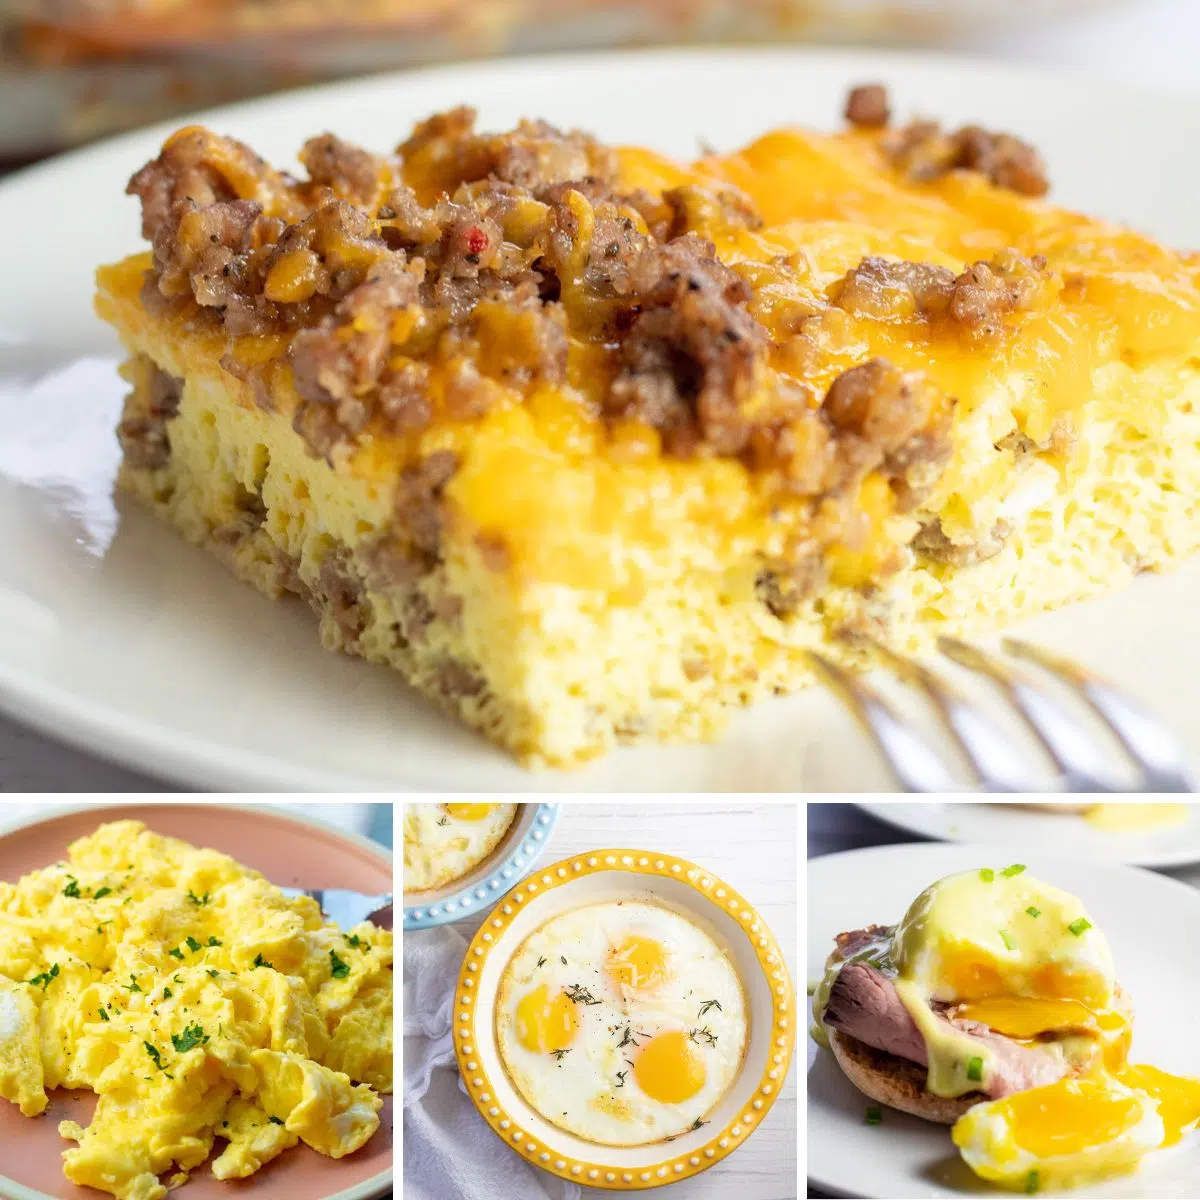 Bedste æg morgenmadsopskrifter collage med 4 fremhævede retter.